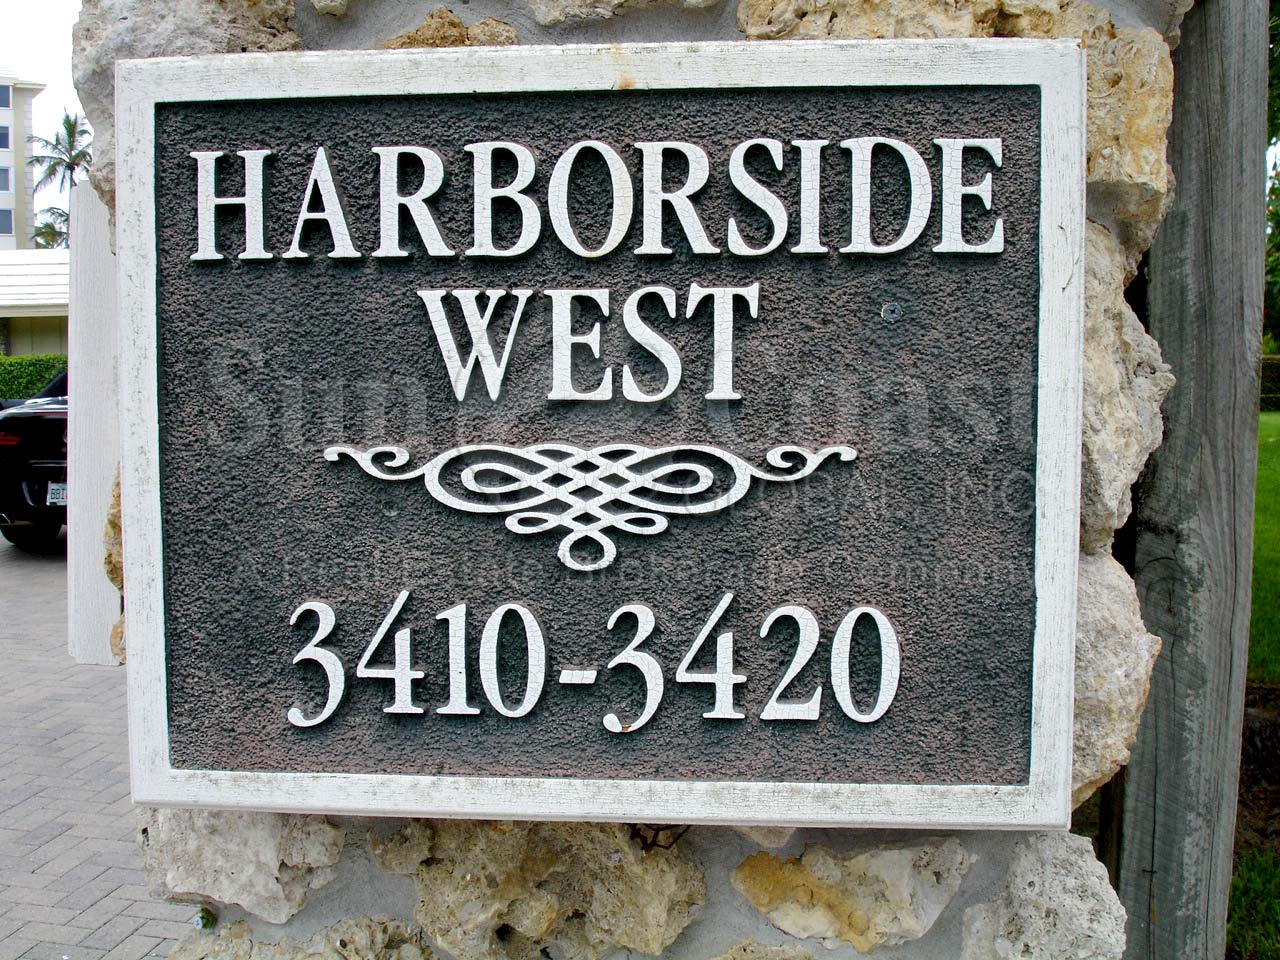 Harborside West sign